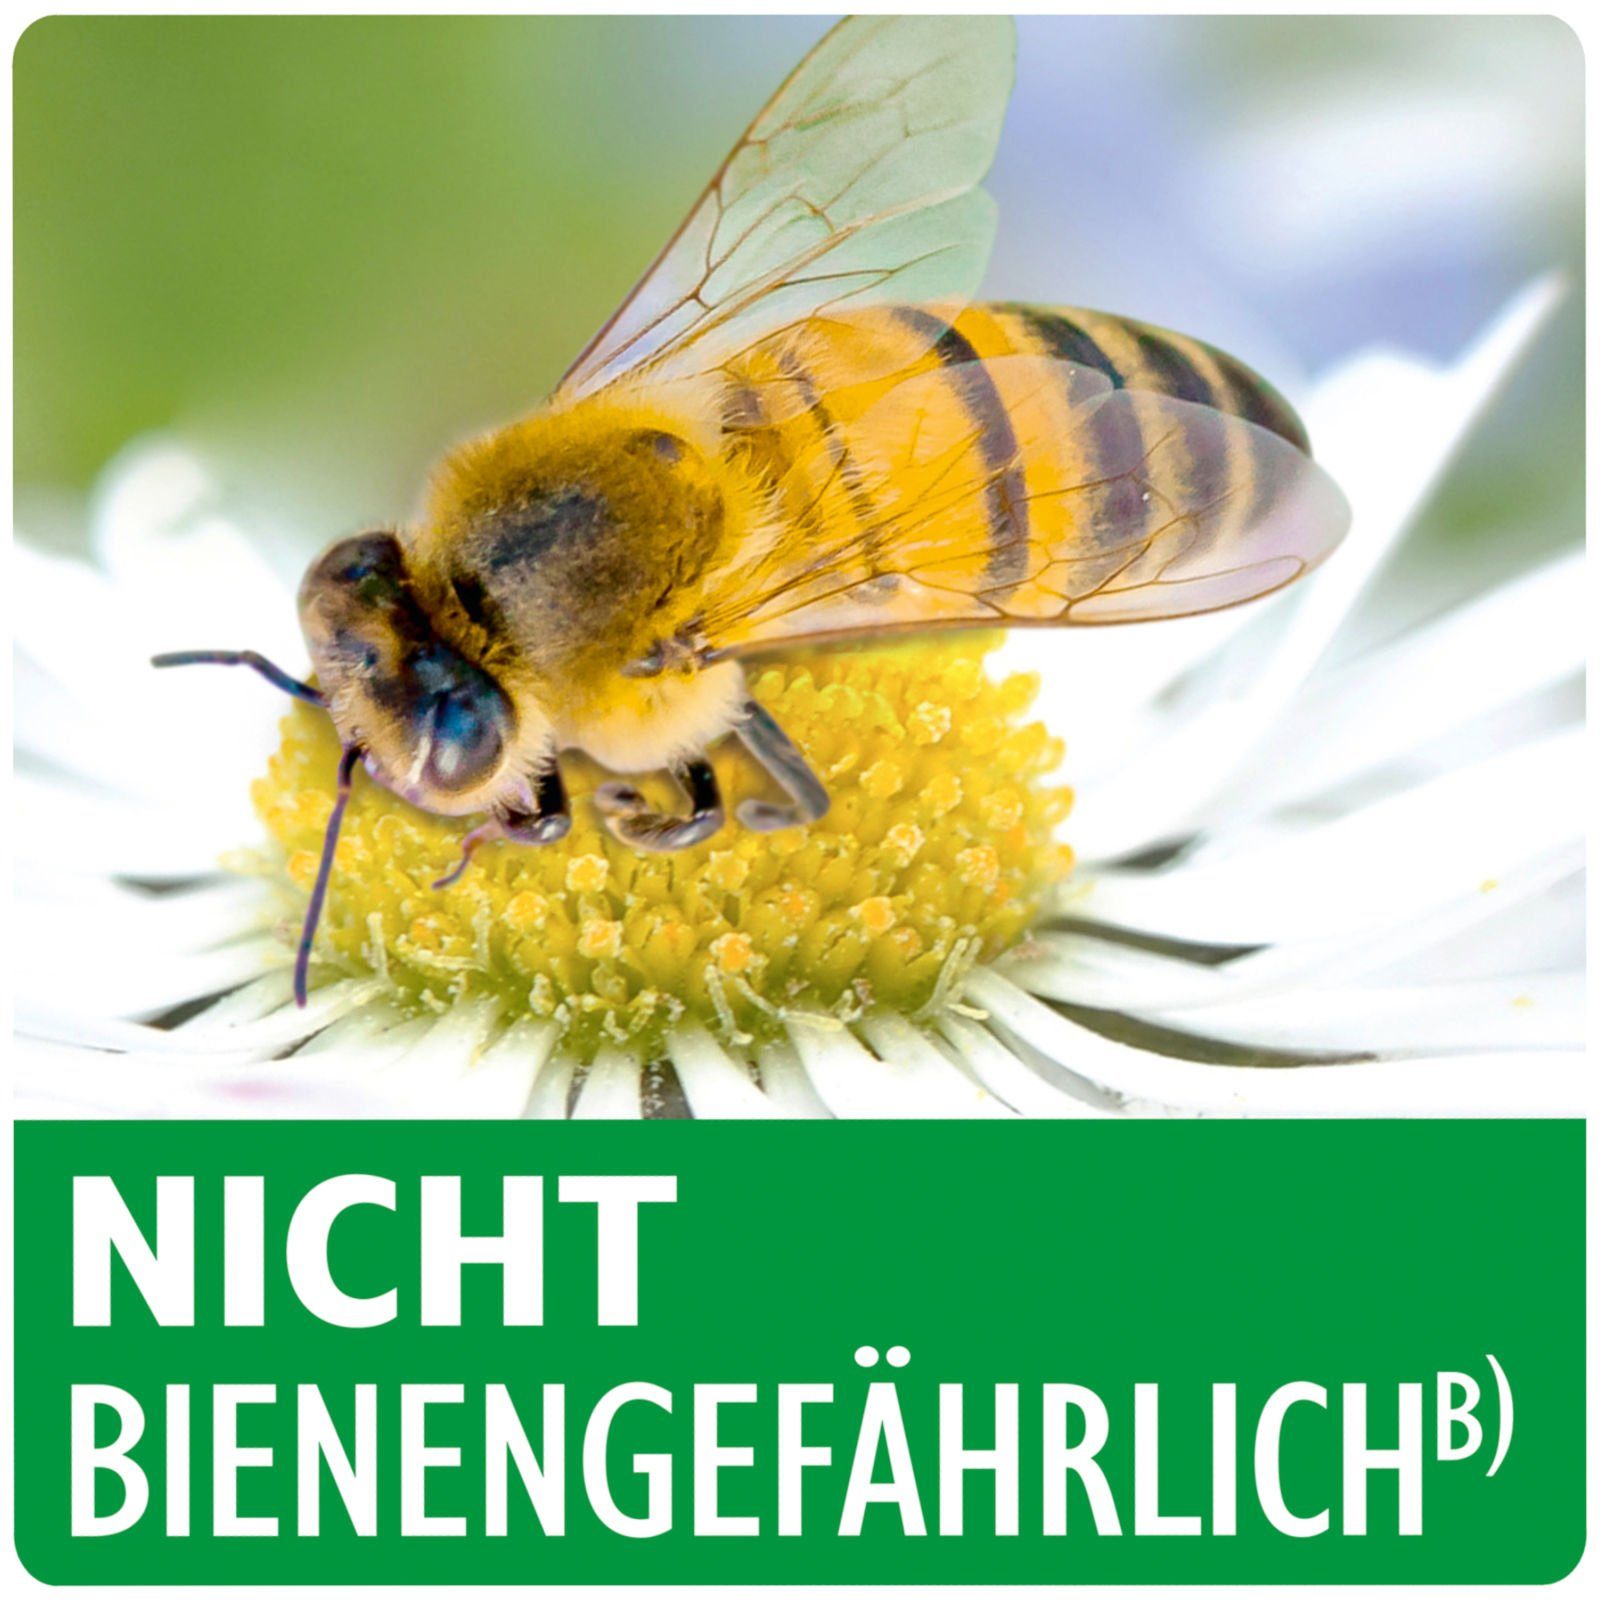 Neudorff Insektenvernichtungsmittel Spruzit ml Schädlingsfrei - 250